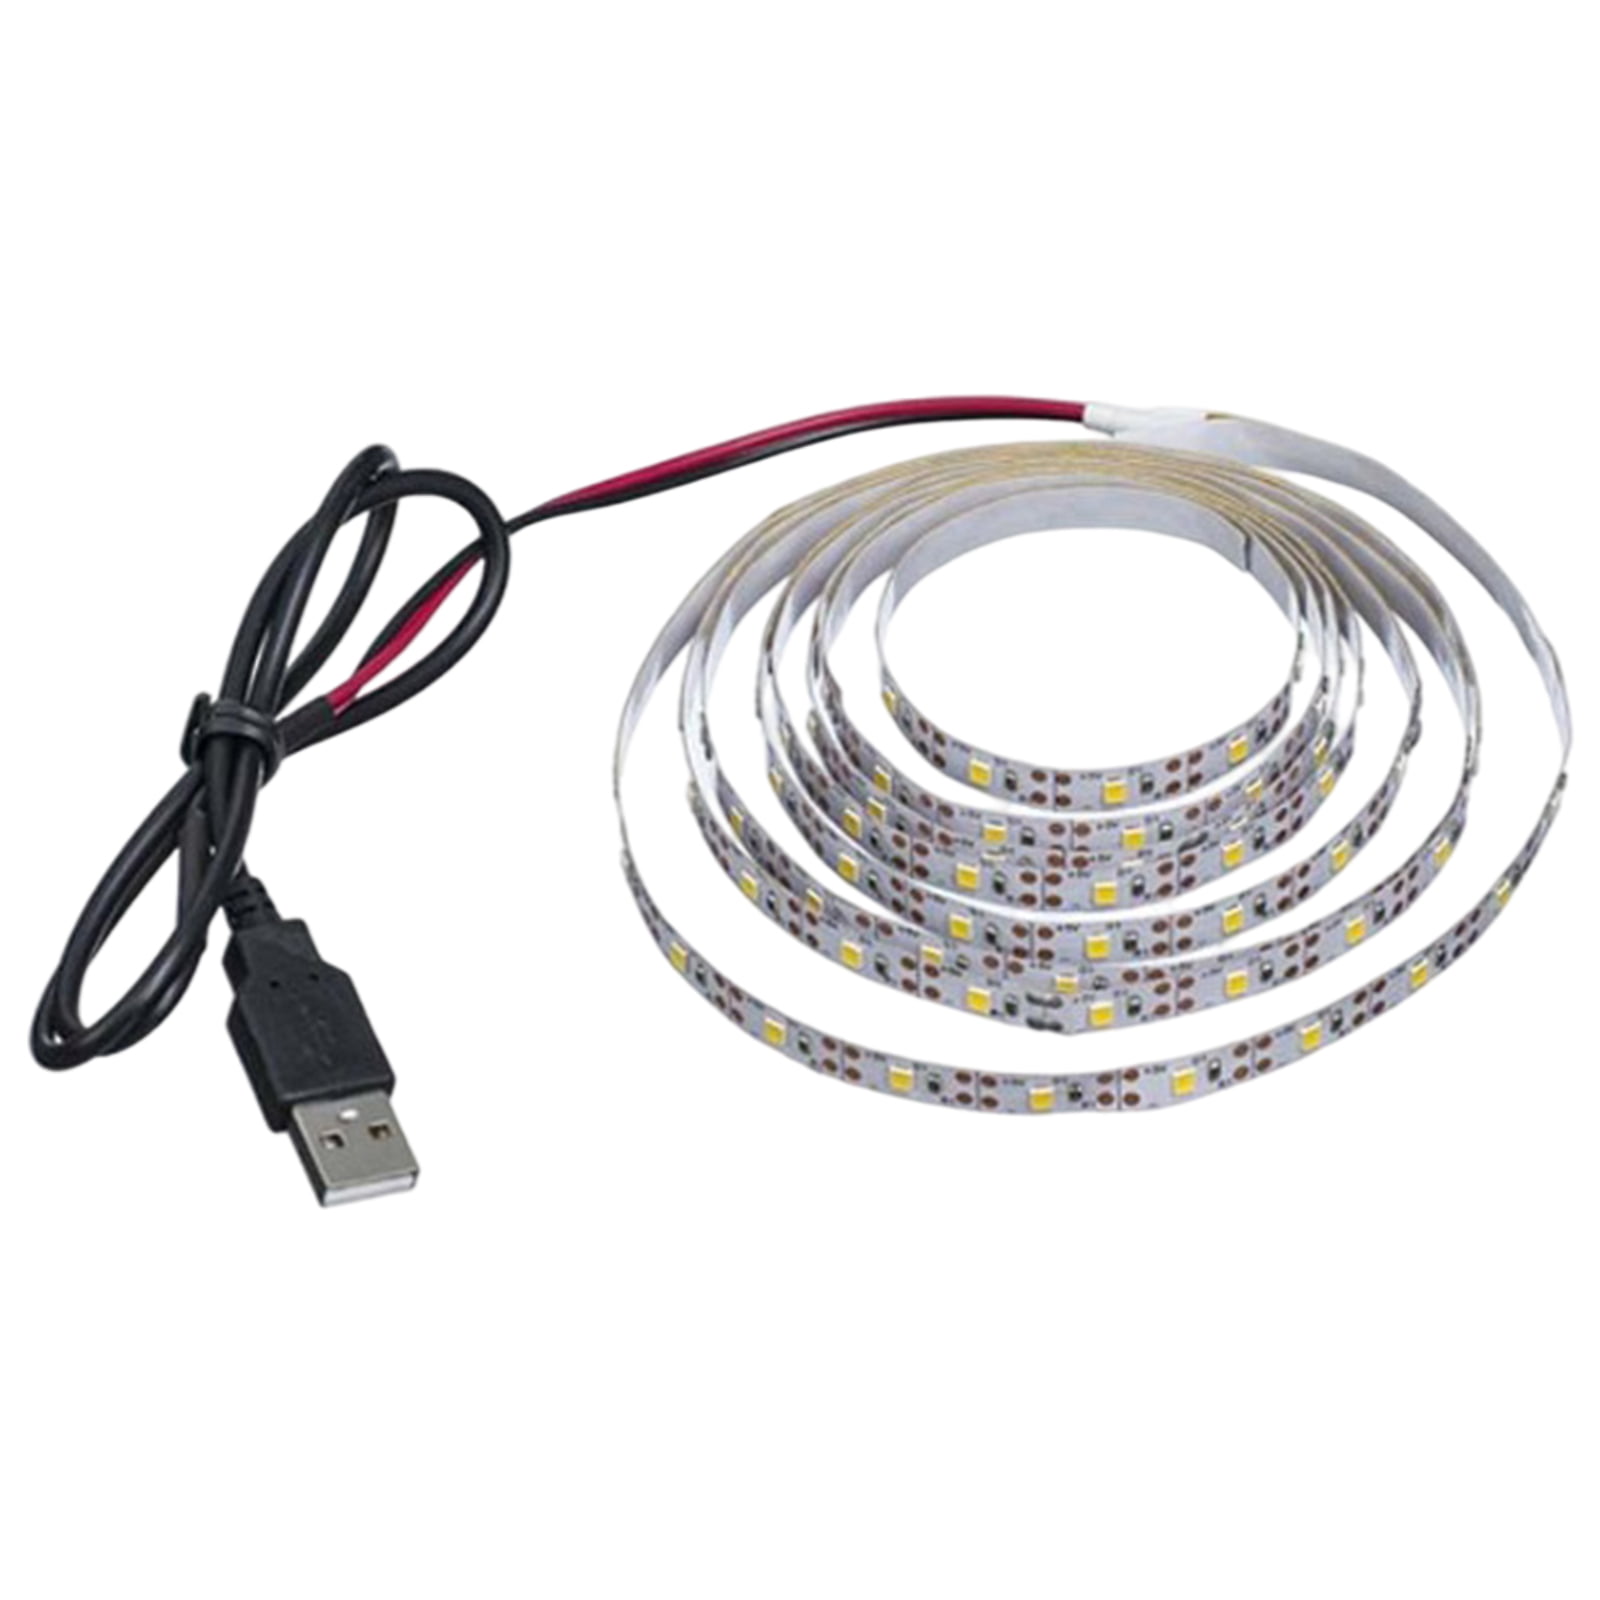 USB LED Strip lamp 2835SMD DC5V Flexible LED light Tape Ribbon 1M 2M 3M 4M 5M HD 